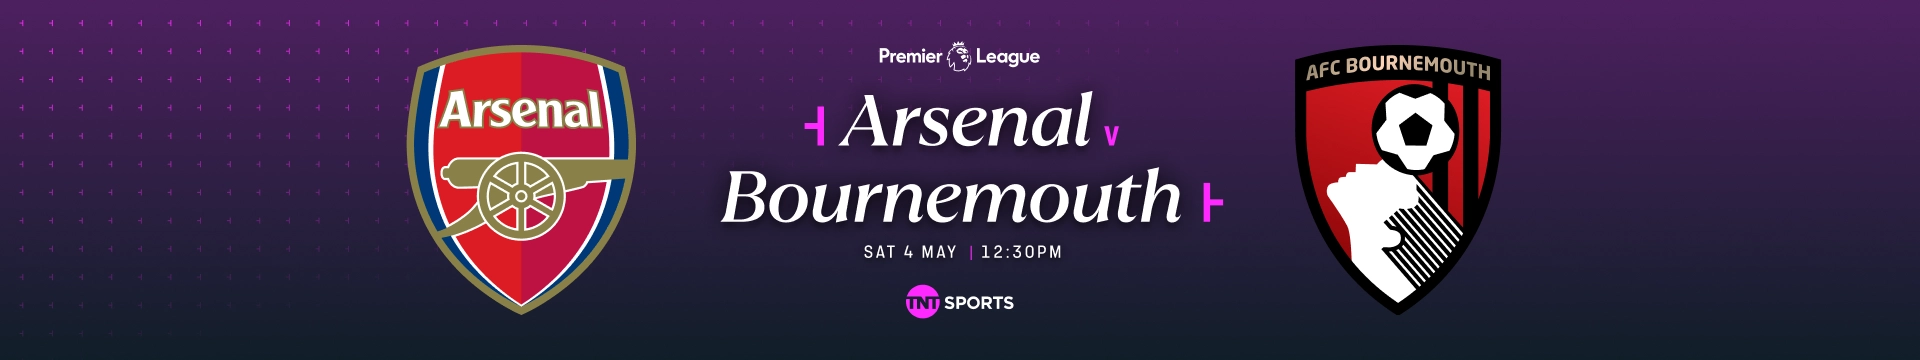 Arsenal v Bournemouth Saturday 4 May at 12:30pm